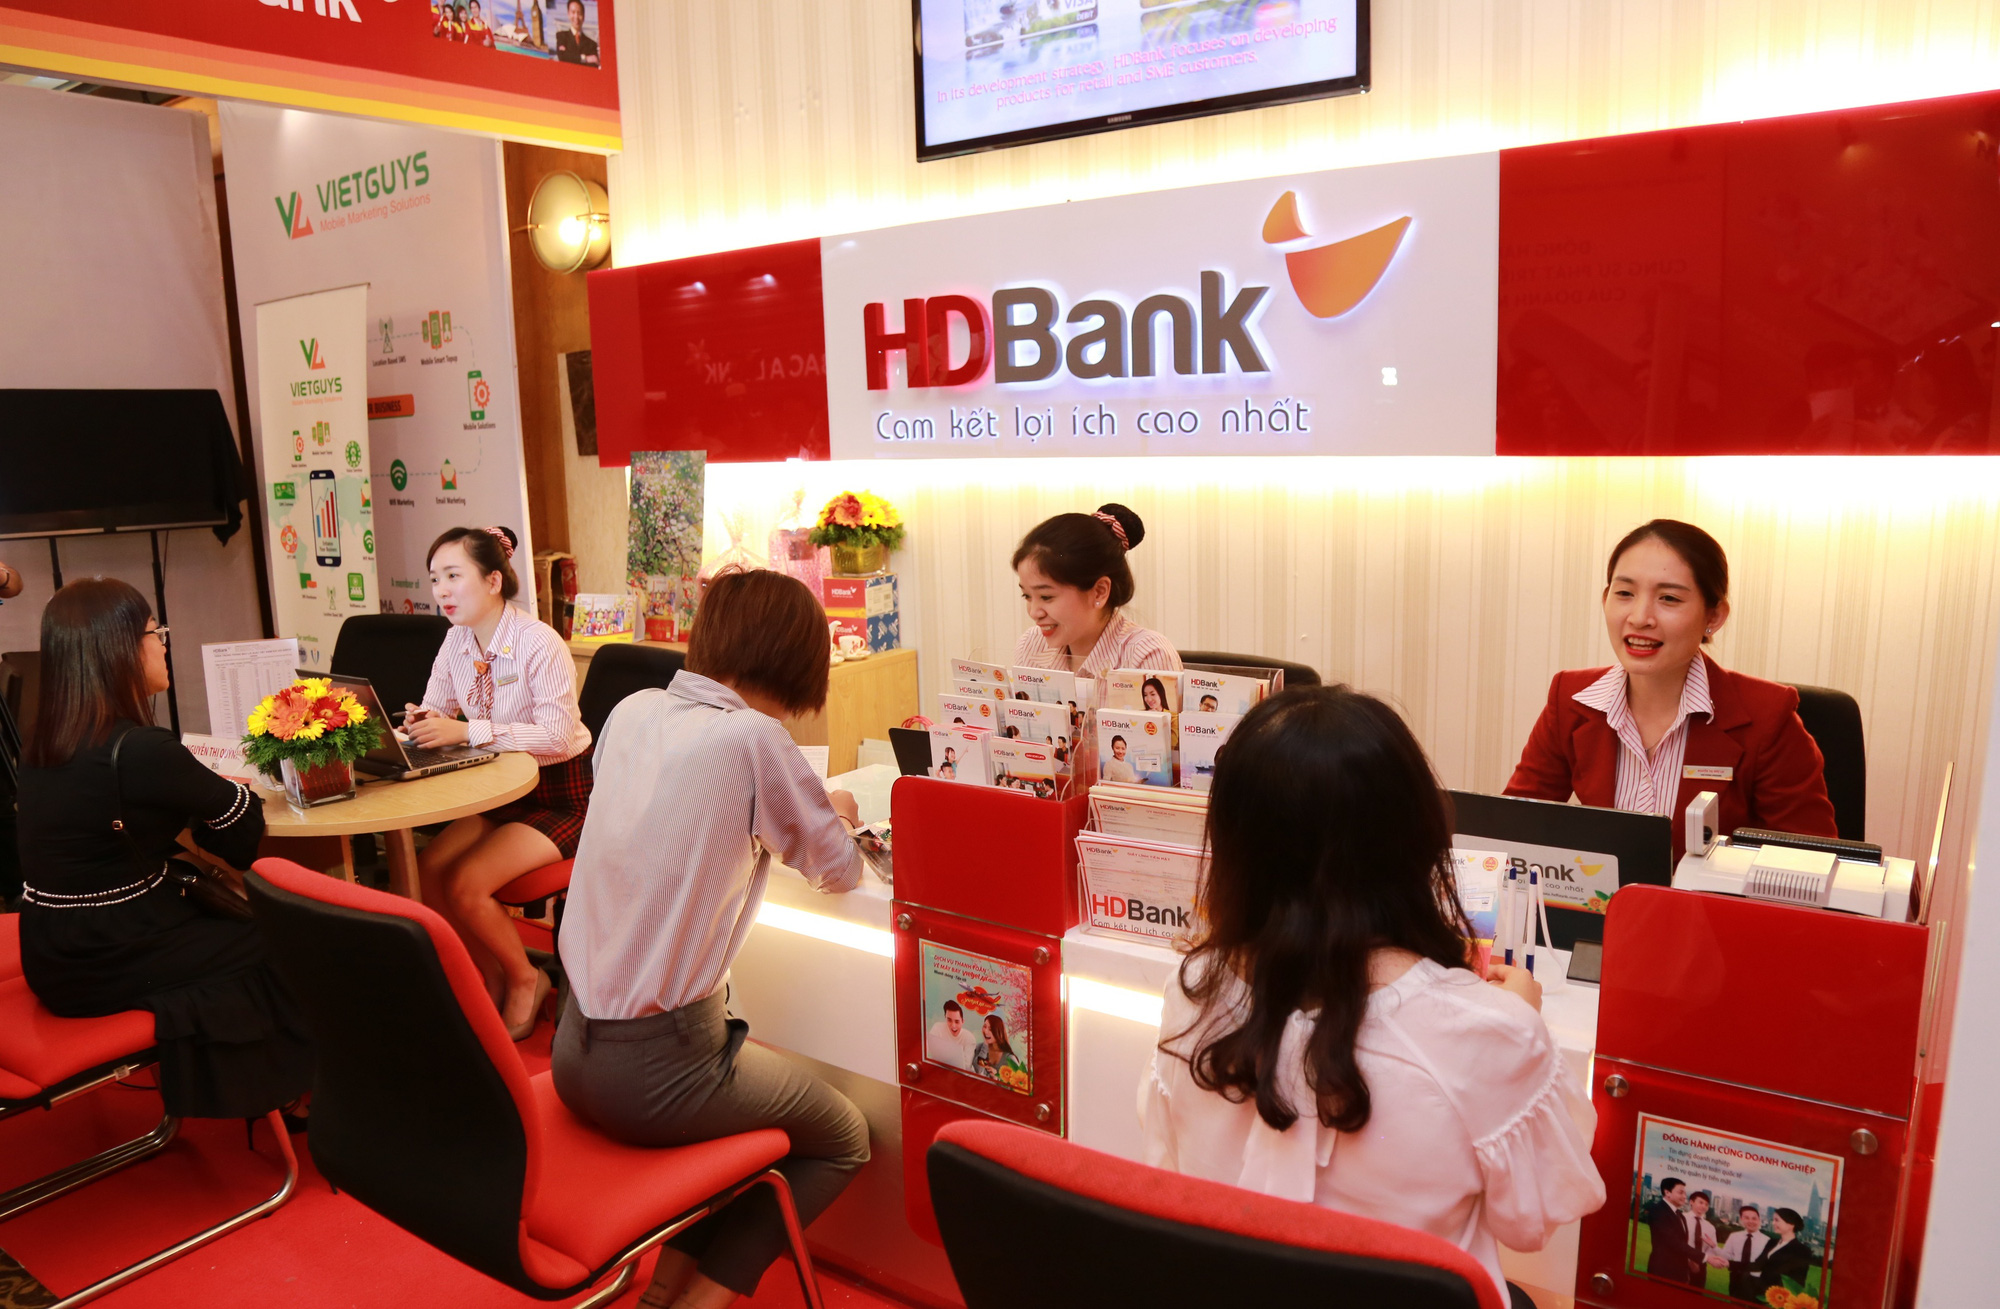 HDbank là gì ngân hàng gì? nhà nước hay tư nhân, uy tín không?